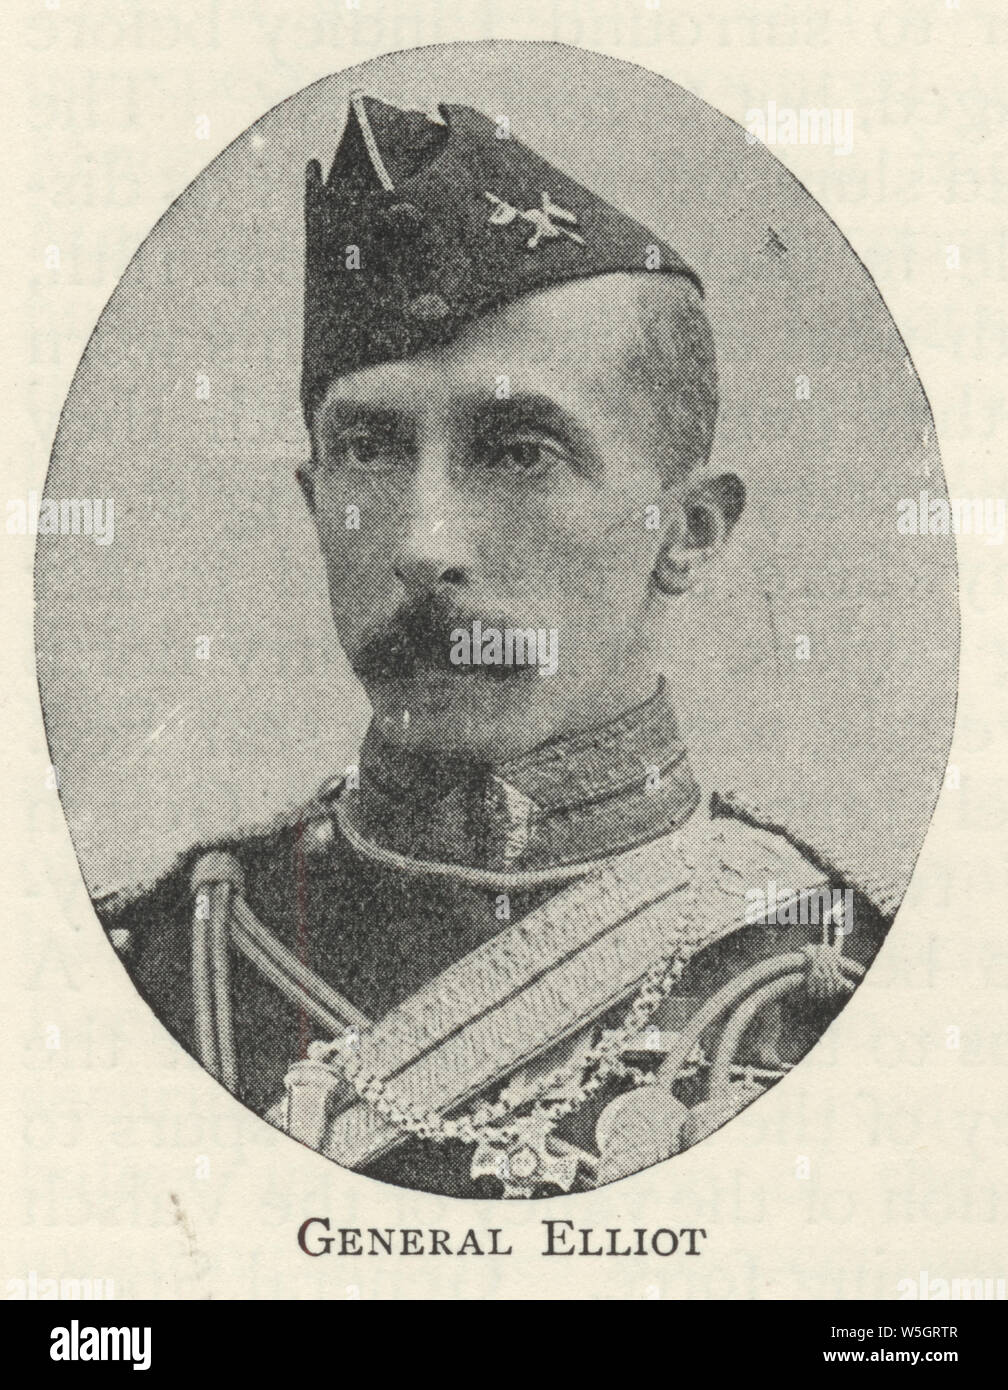 Le Lieutenant-général Sir Edward Locke, John HOUBLON John Elliot, KCB, DSO (28 janvier 1850 - 12 décembre 1938) était un général de l'armée britannique pendant la Seconde Guerre des Boers et de l'Inde. Banque D'Images